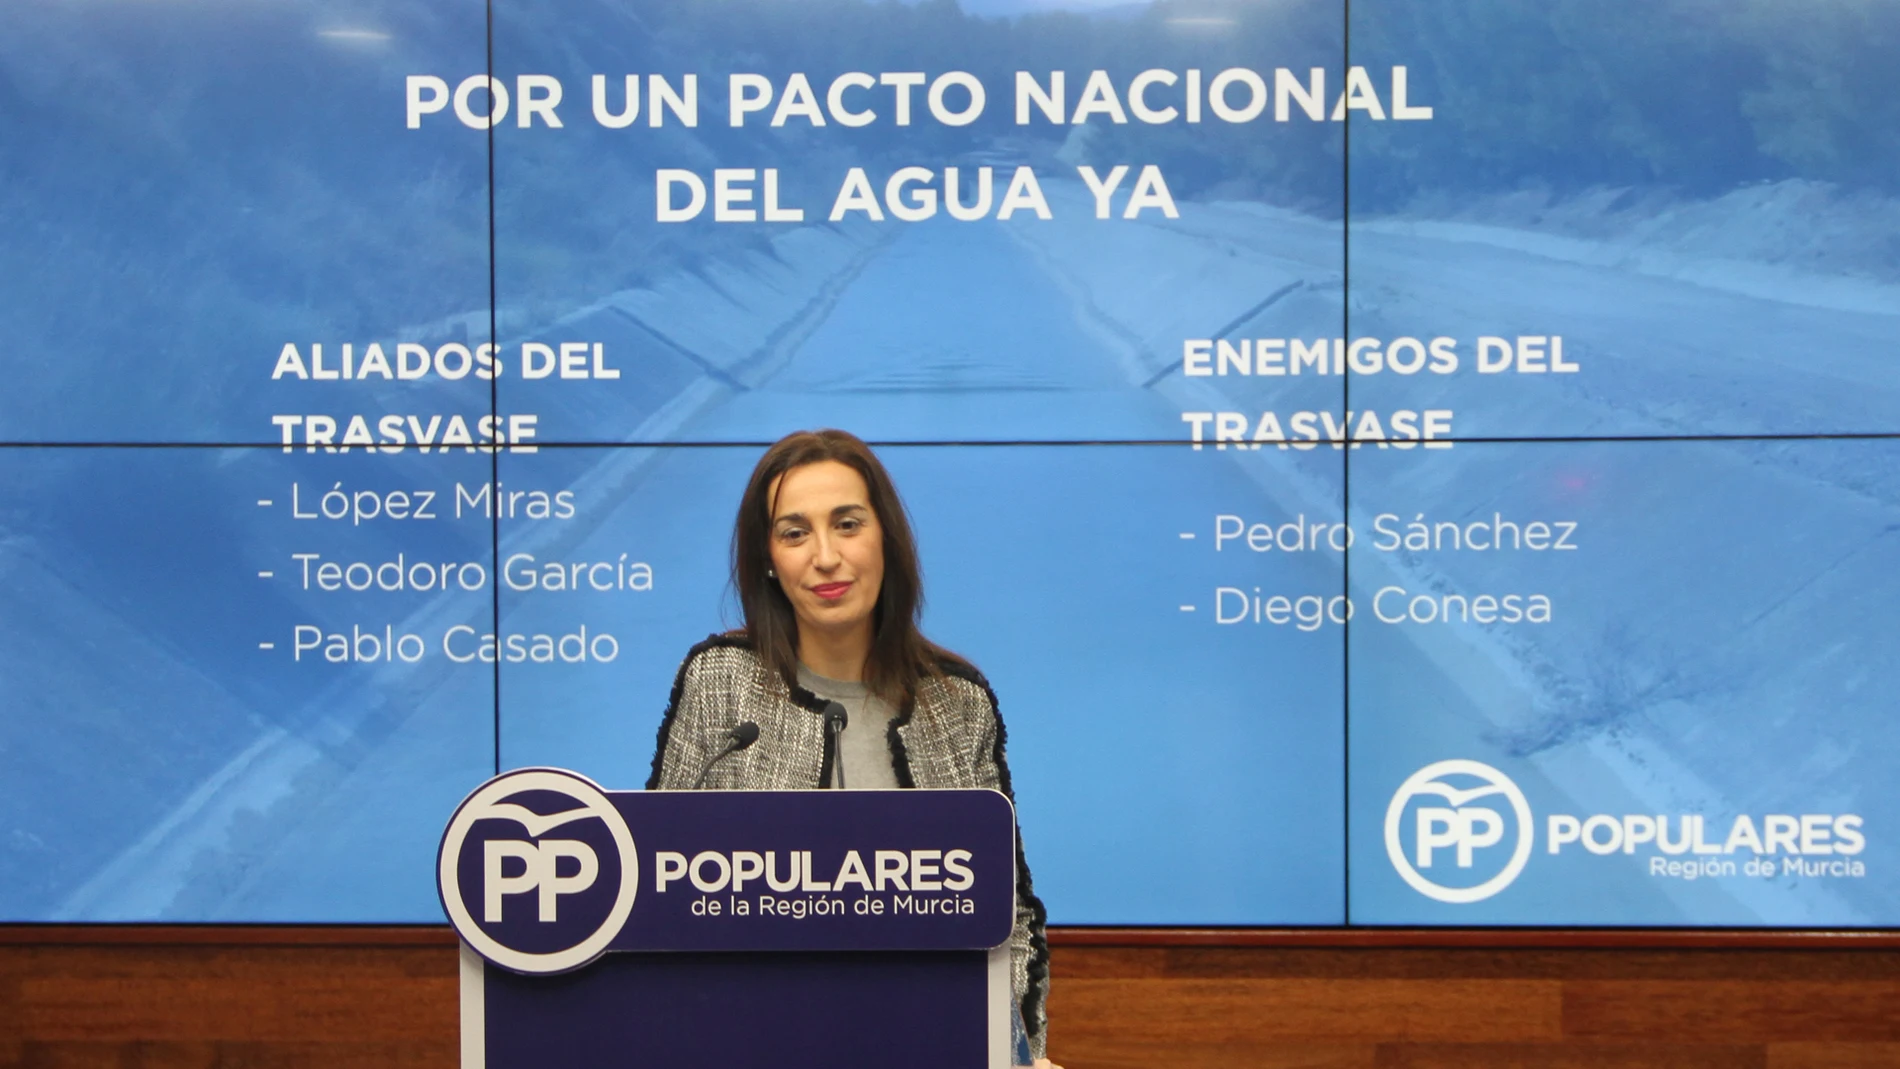 La portavoz del PP regional, Nuria Fuentes